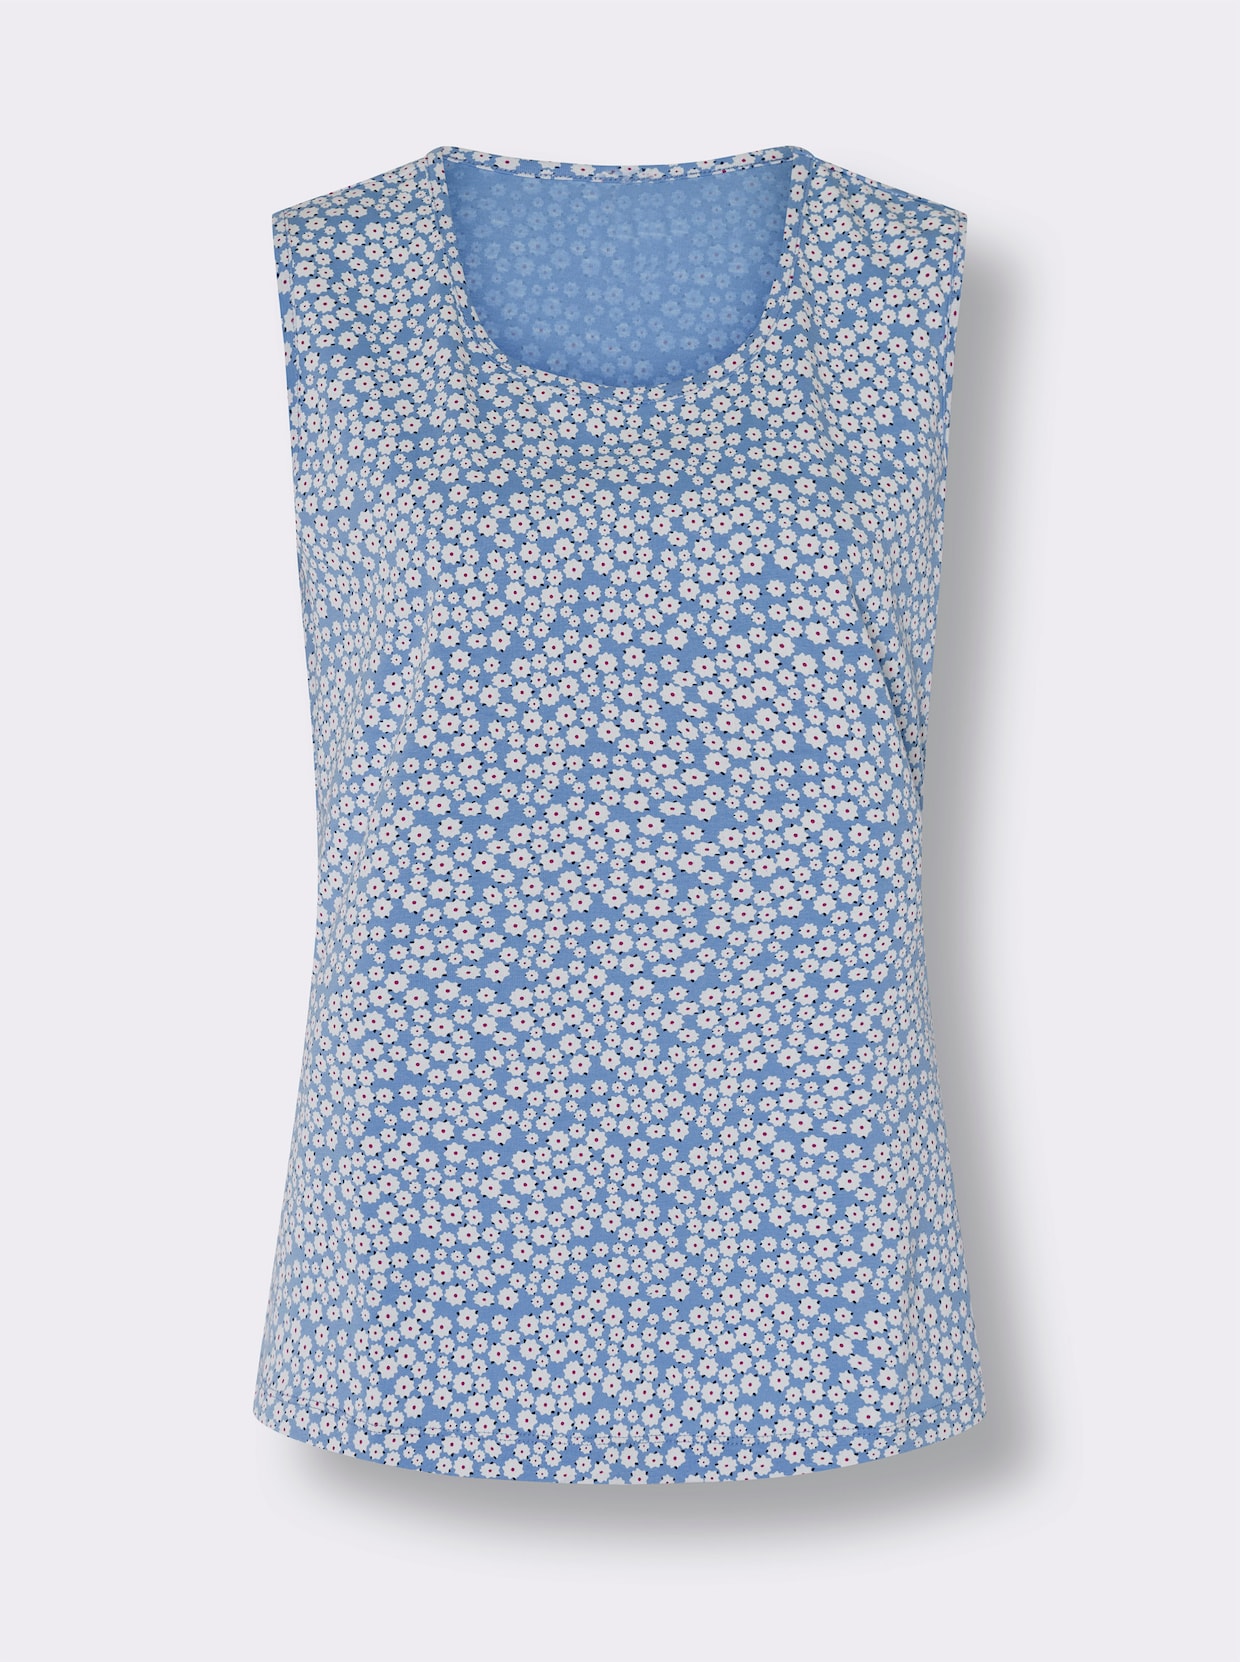 Shirttops - himmelblau + himmelblau-weiss-bedruckt